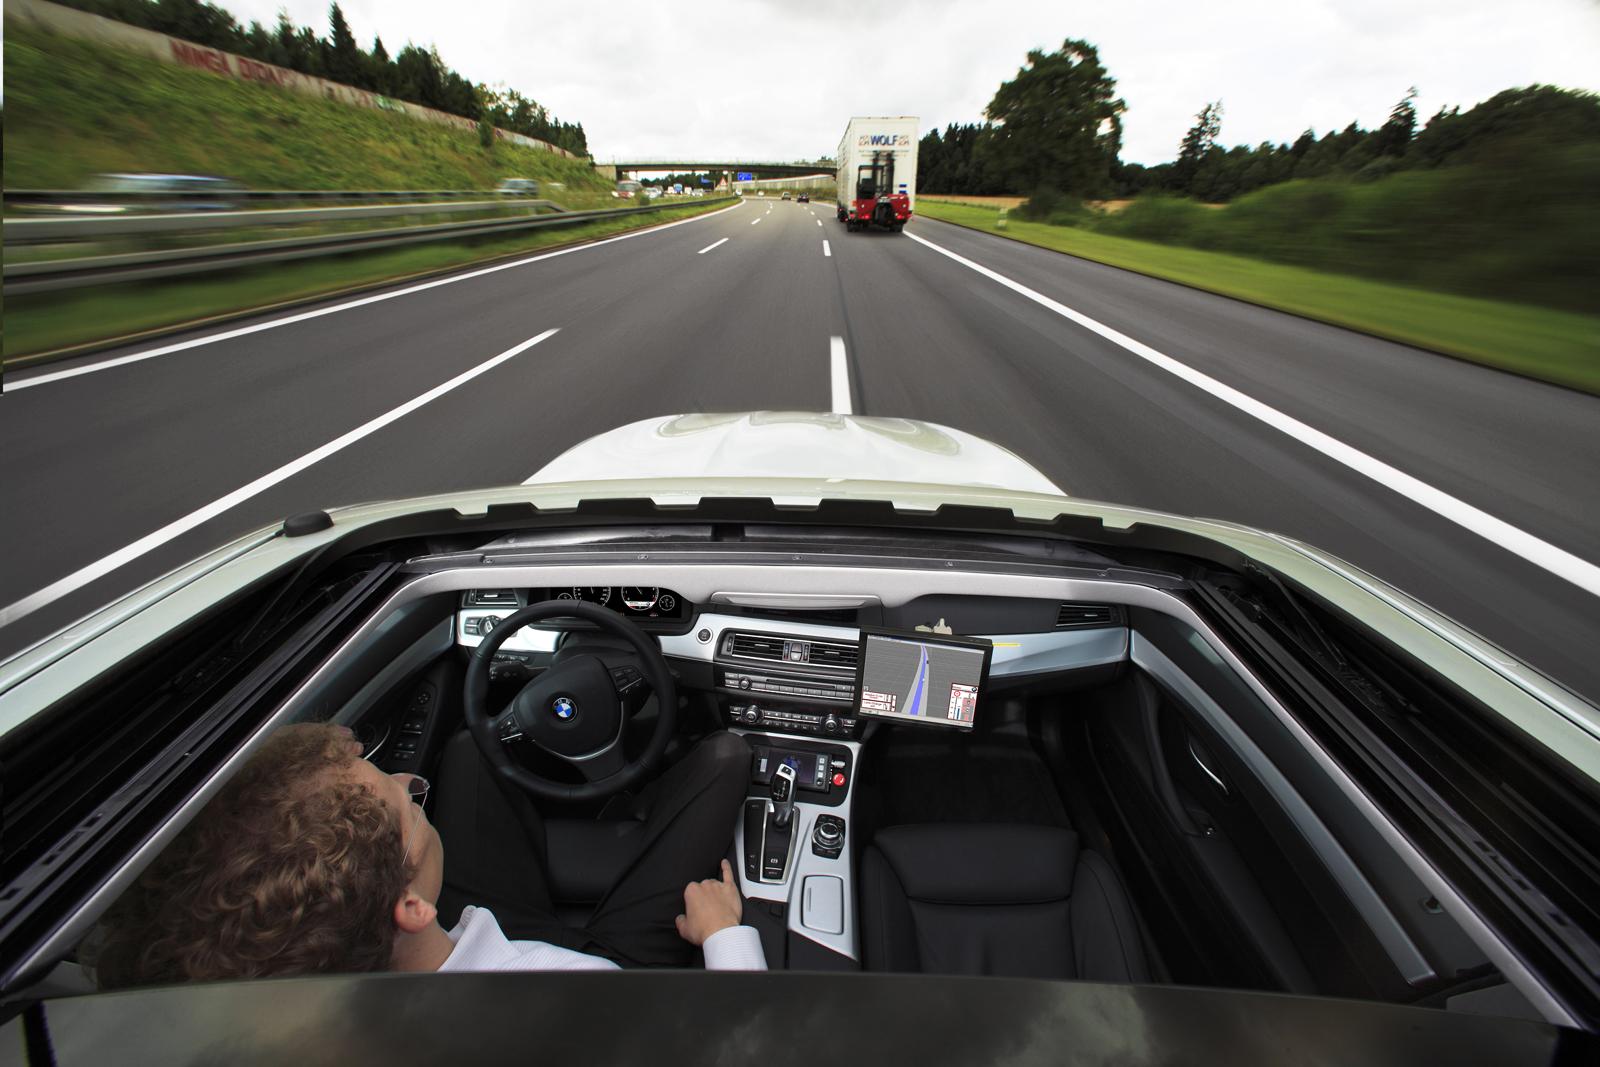 BMW Apple iPad Holder merupakan bagian dari Travel & Comfort System yang dikembangkan oleh BMW